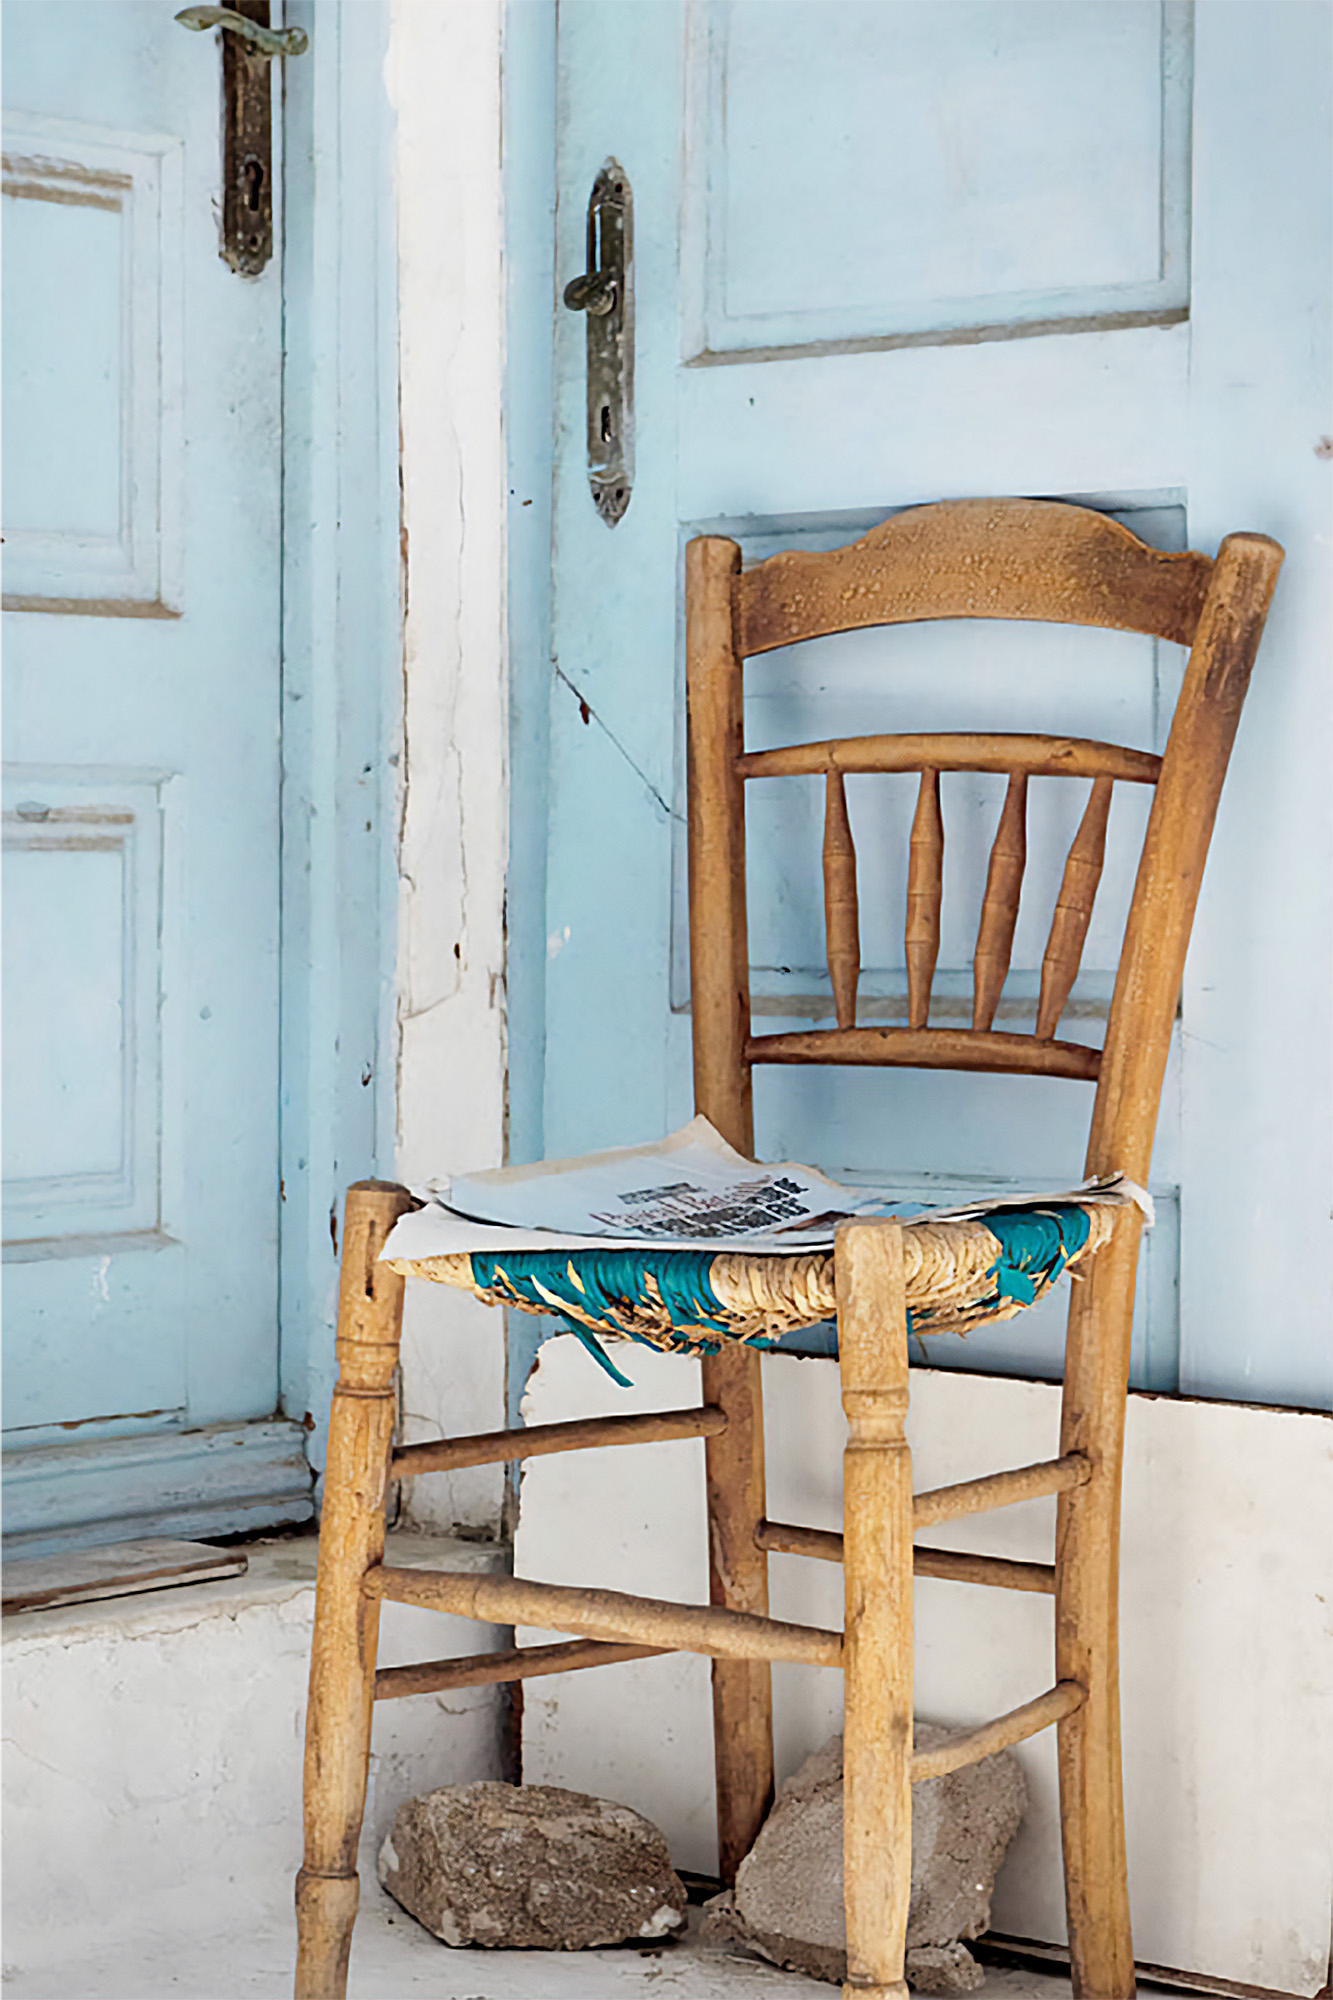 krzesełko stojące pod ścianą z niebieskimi drzwiami